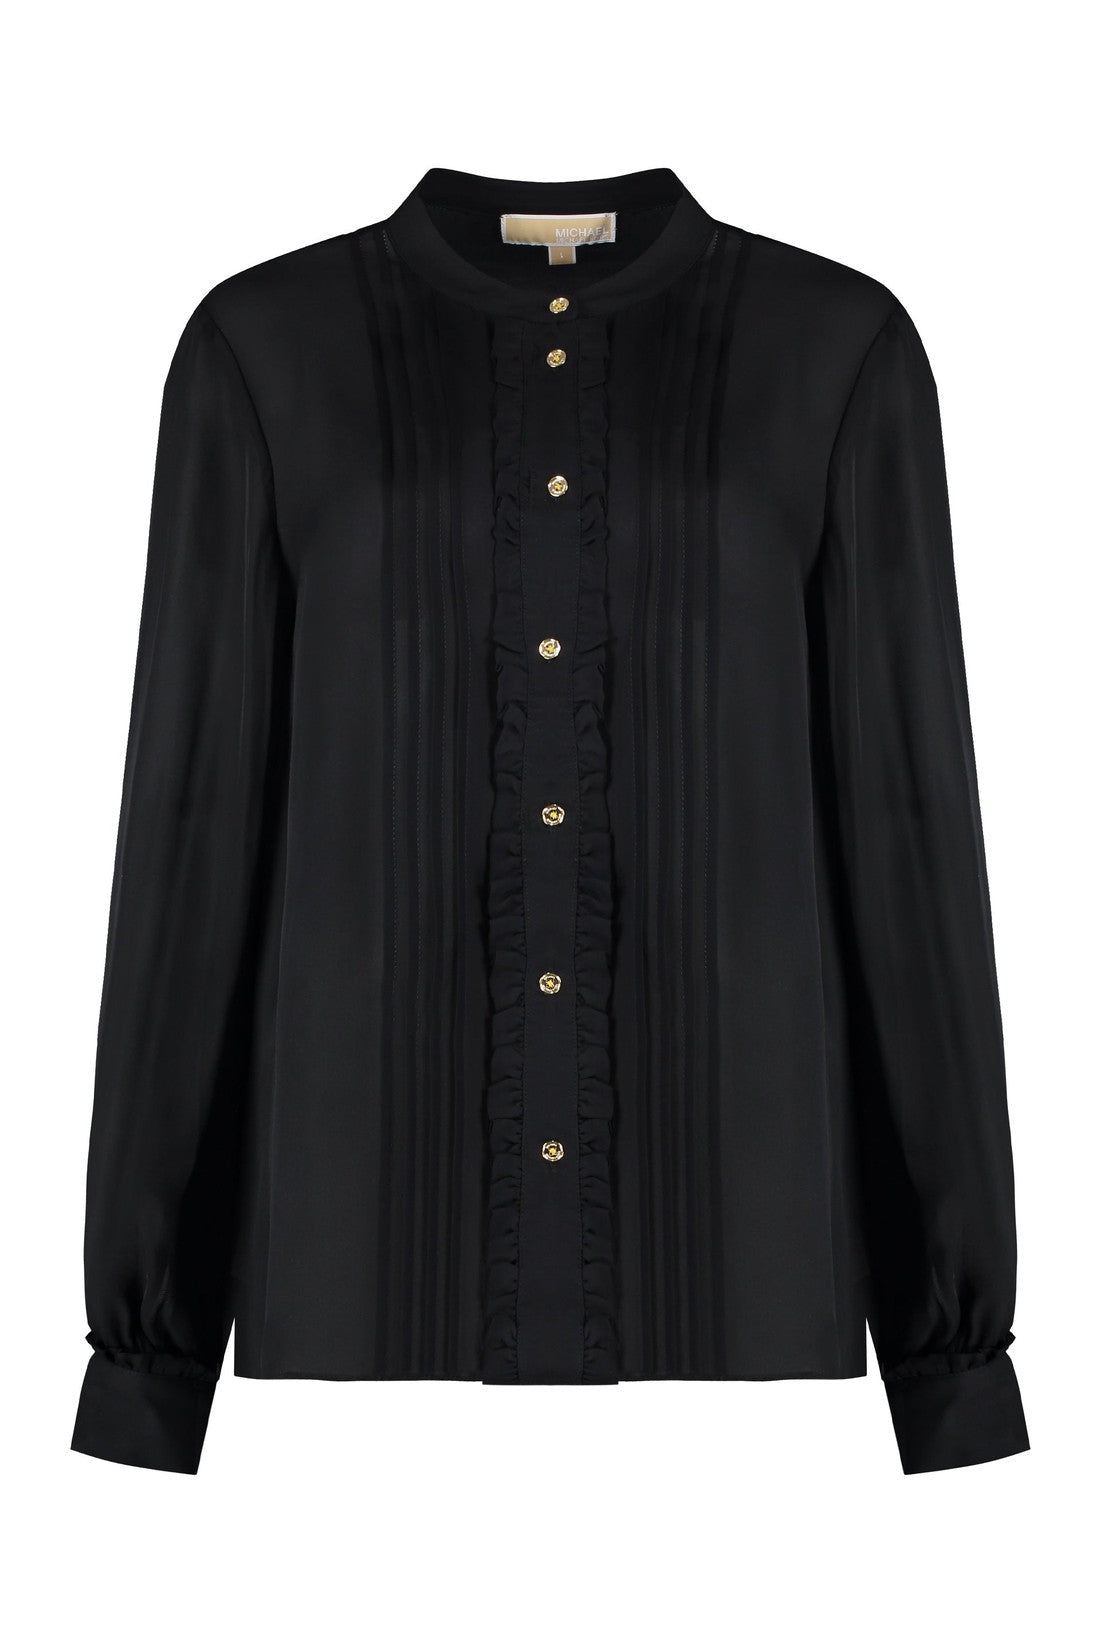 MICHAEL MICHAEL KORS-OUTLET-SALE-Silk blend blouse-ARCHIVIST